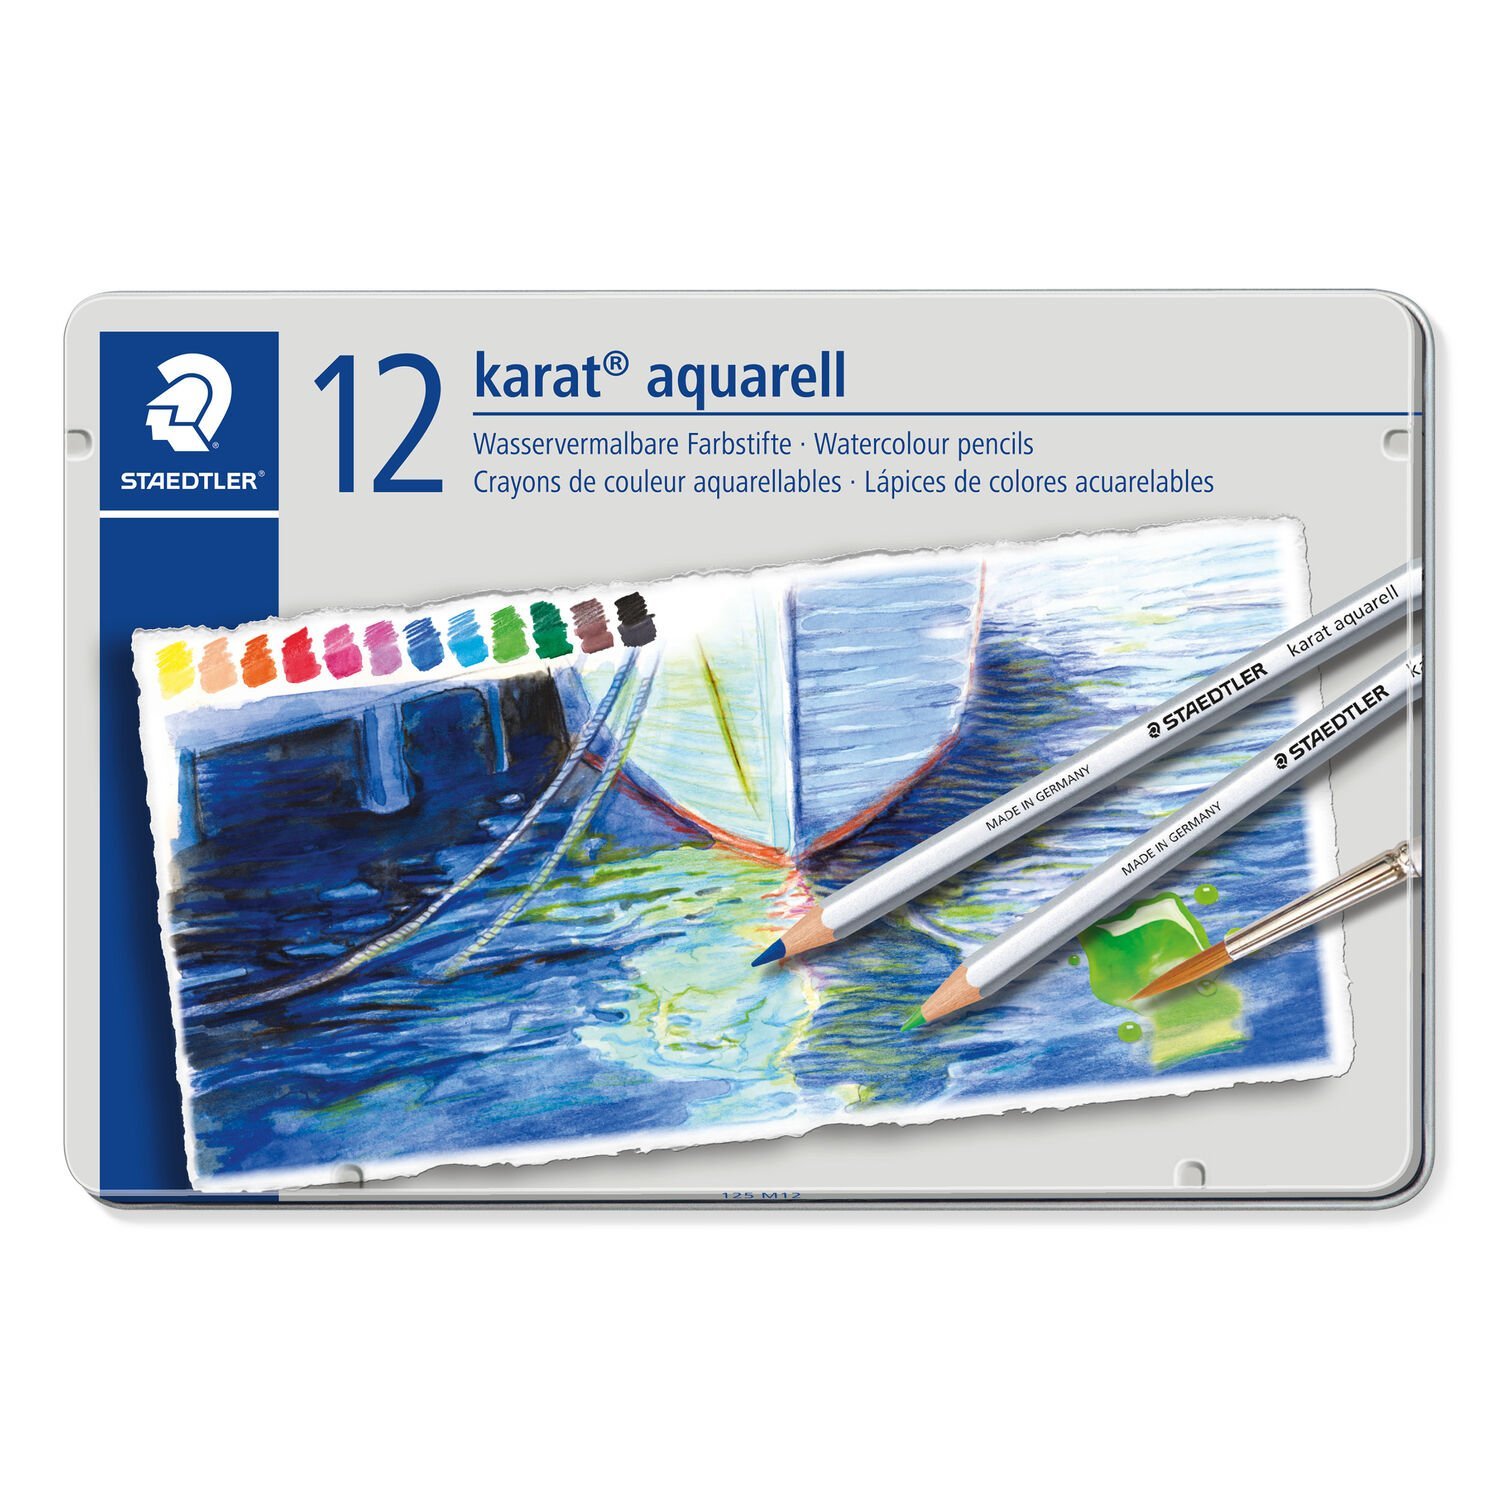 karat® aquarell 125 - Watercolour pencil